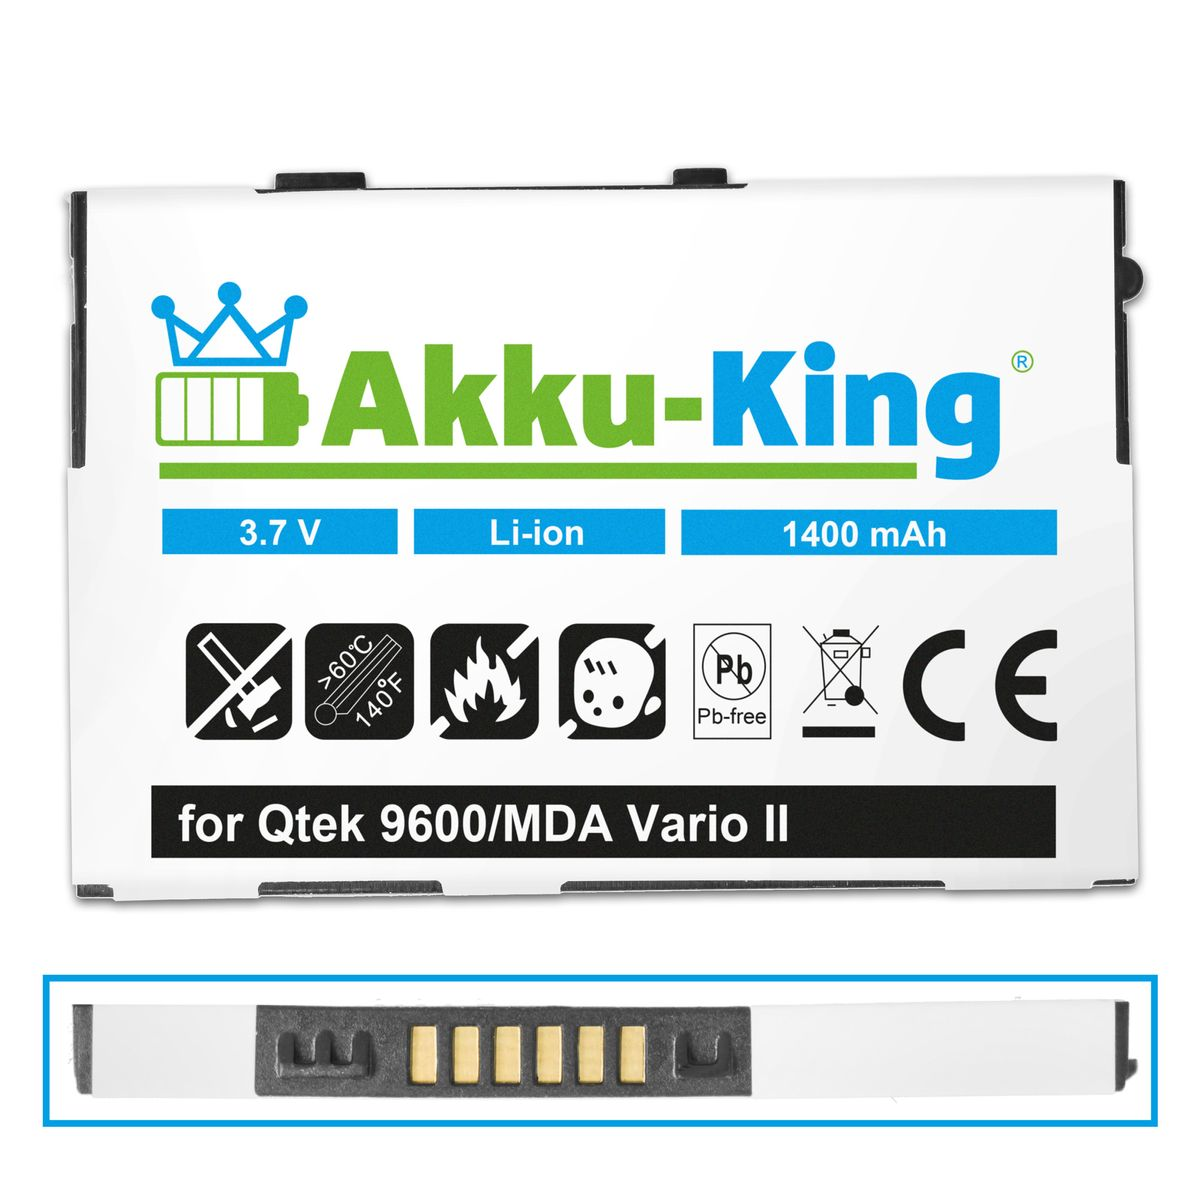 1400mAh 3.7 Qtek Handy-Akku, Li-Ion Akku HTABB1 Volt, kompatibel mit AKKU-KING